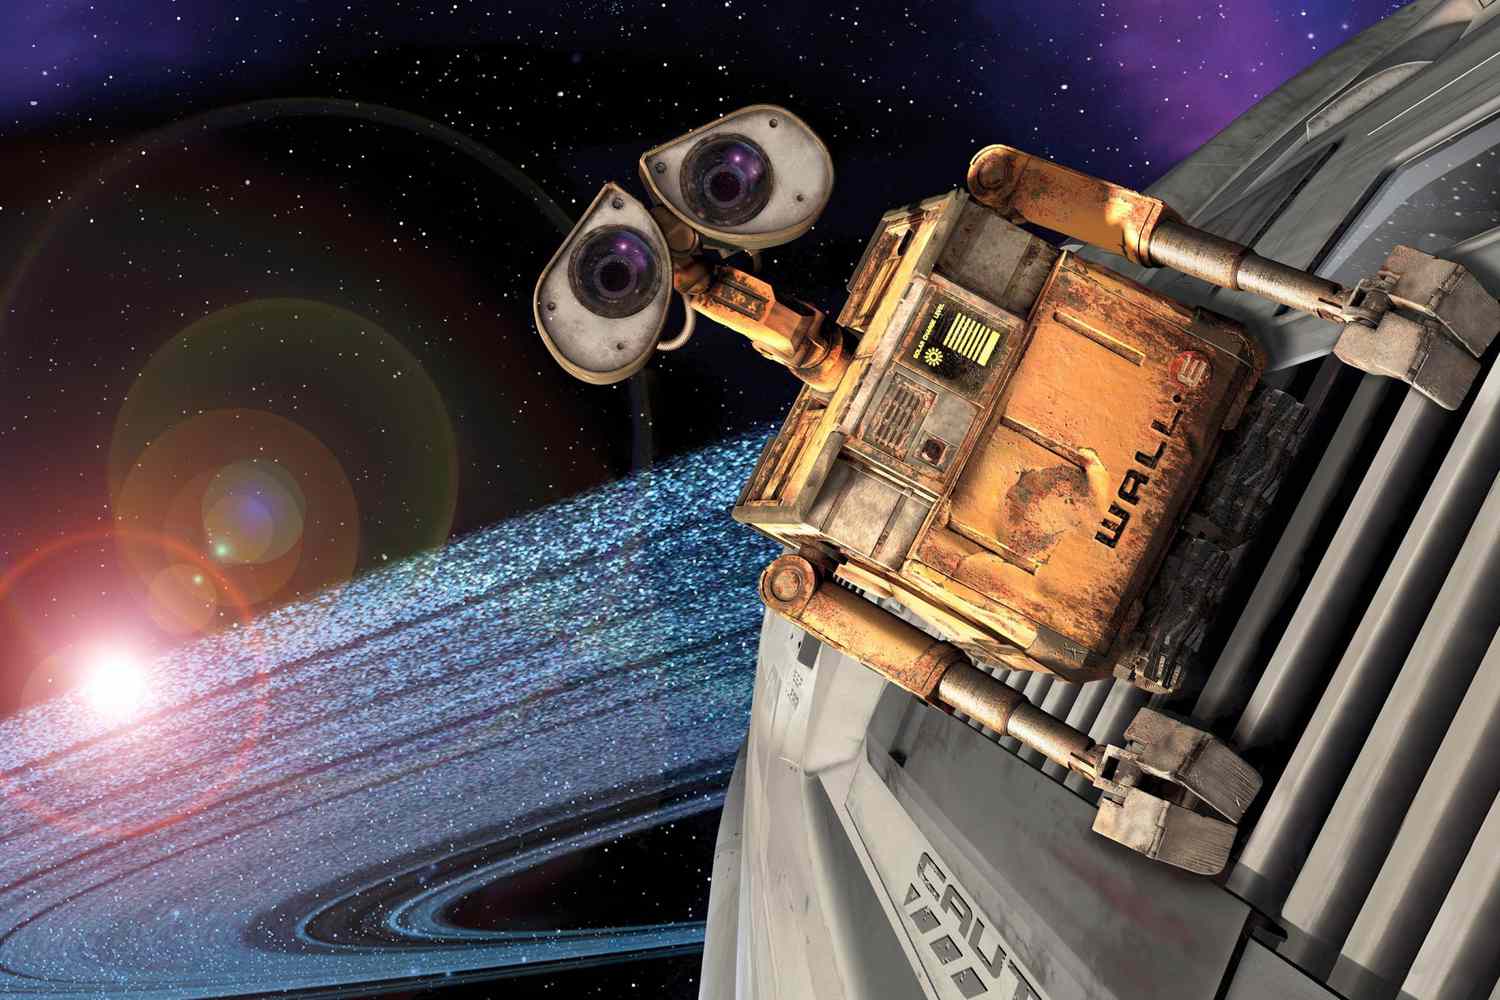 7. WALL-E (2008)